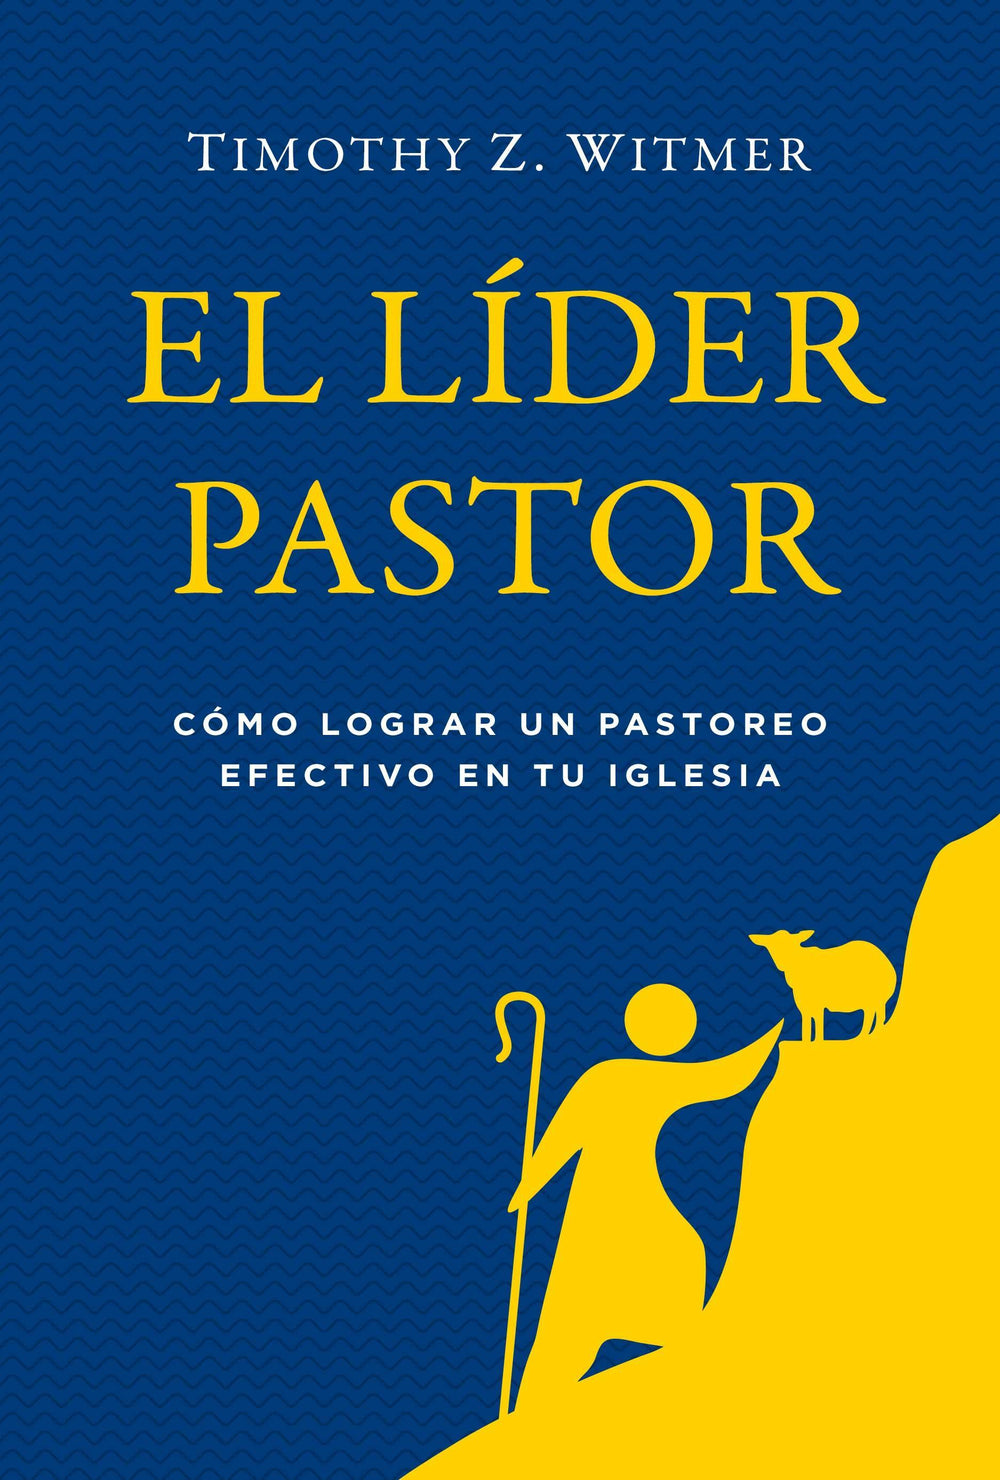 El líder pastor: Cómo lograr un pastoreo efectivo en tu iglesia-Timothy Z. Witmer - Pura Vida Books